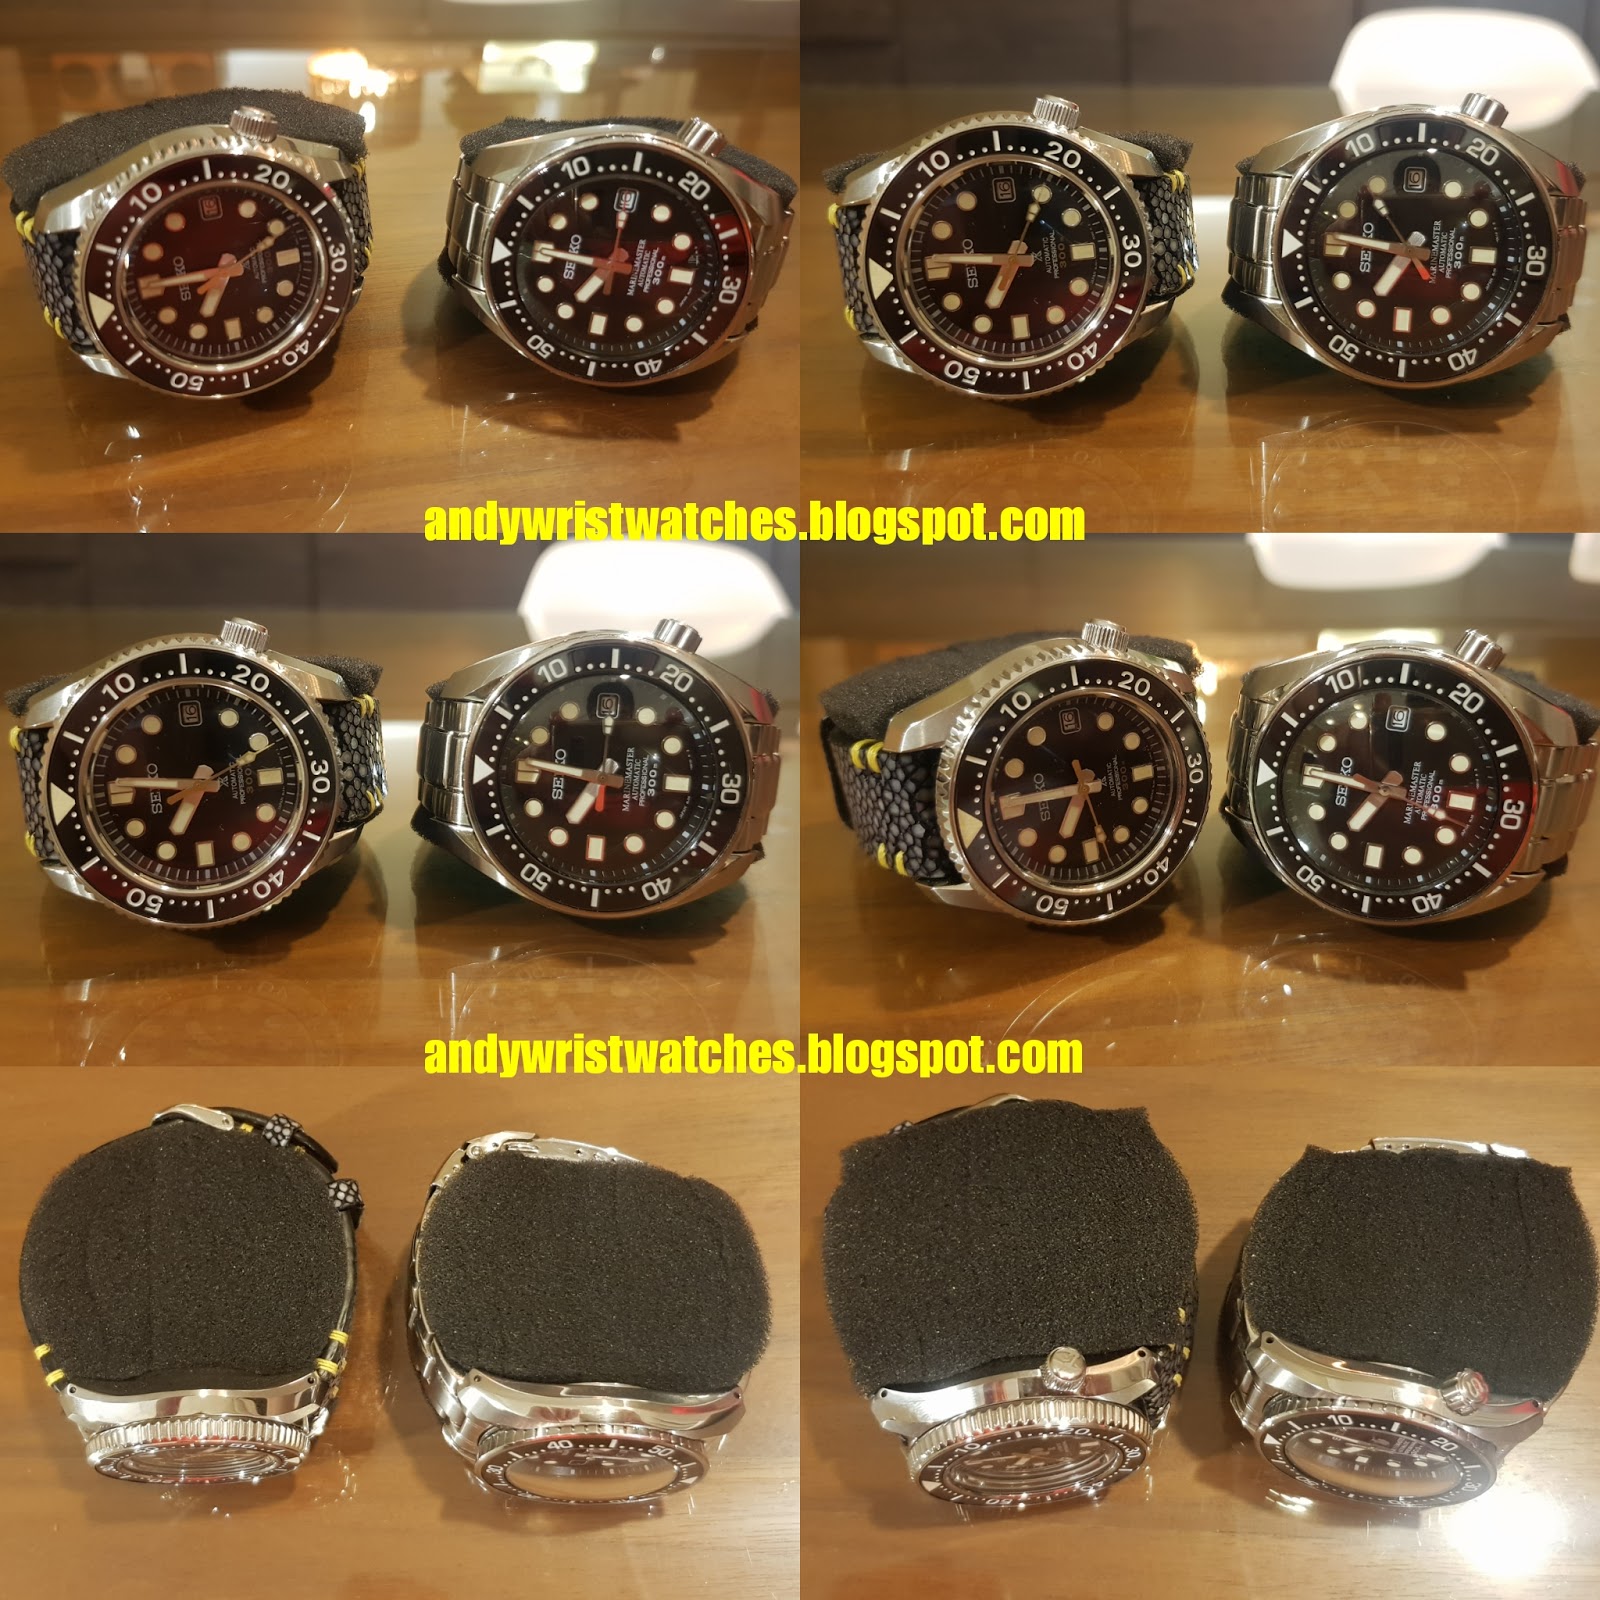 C-segment Wrist Watches: The Seiko Sea-Dweller